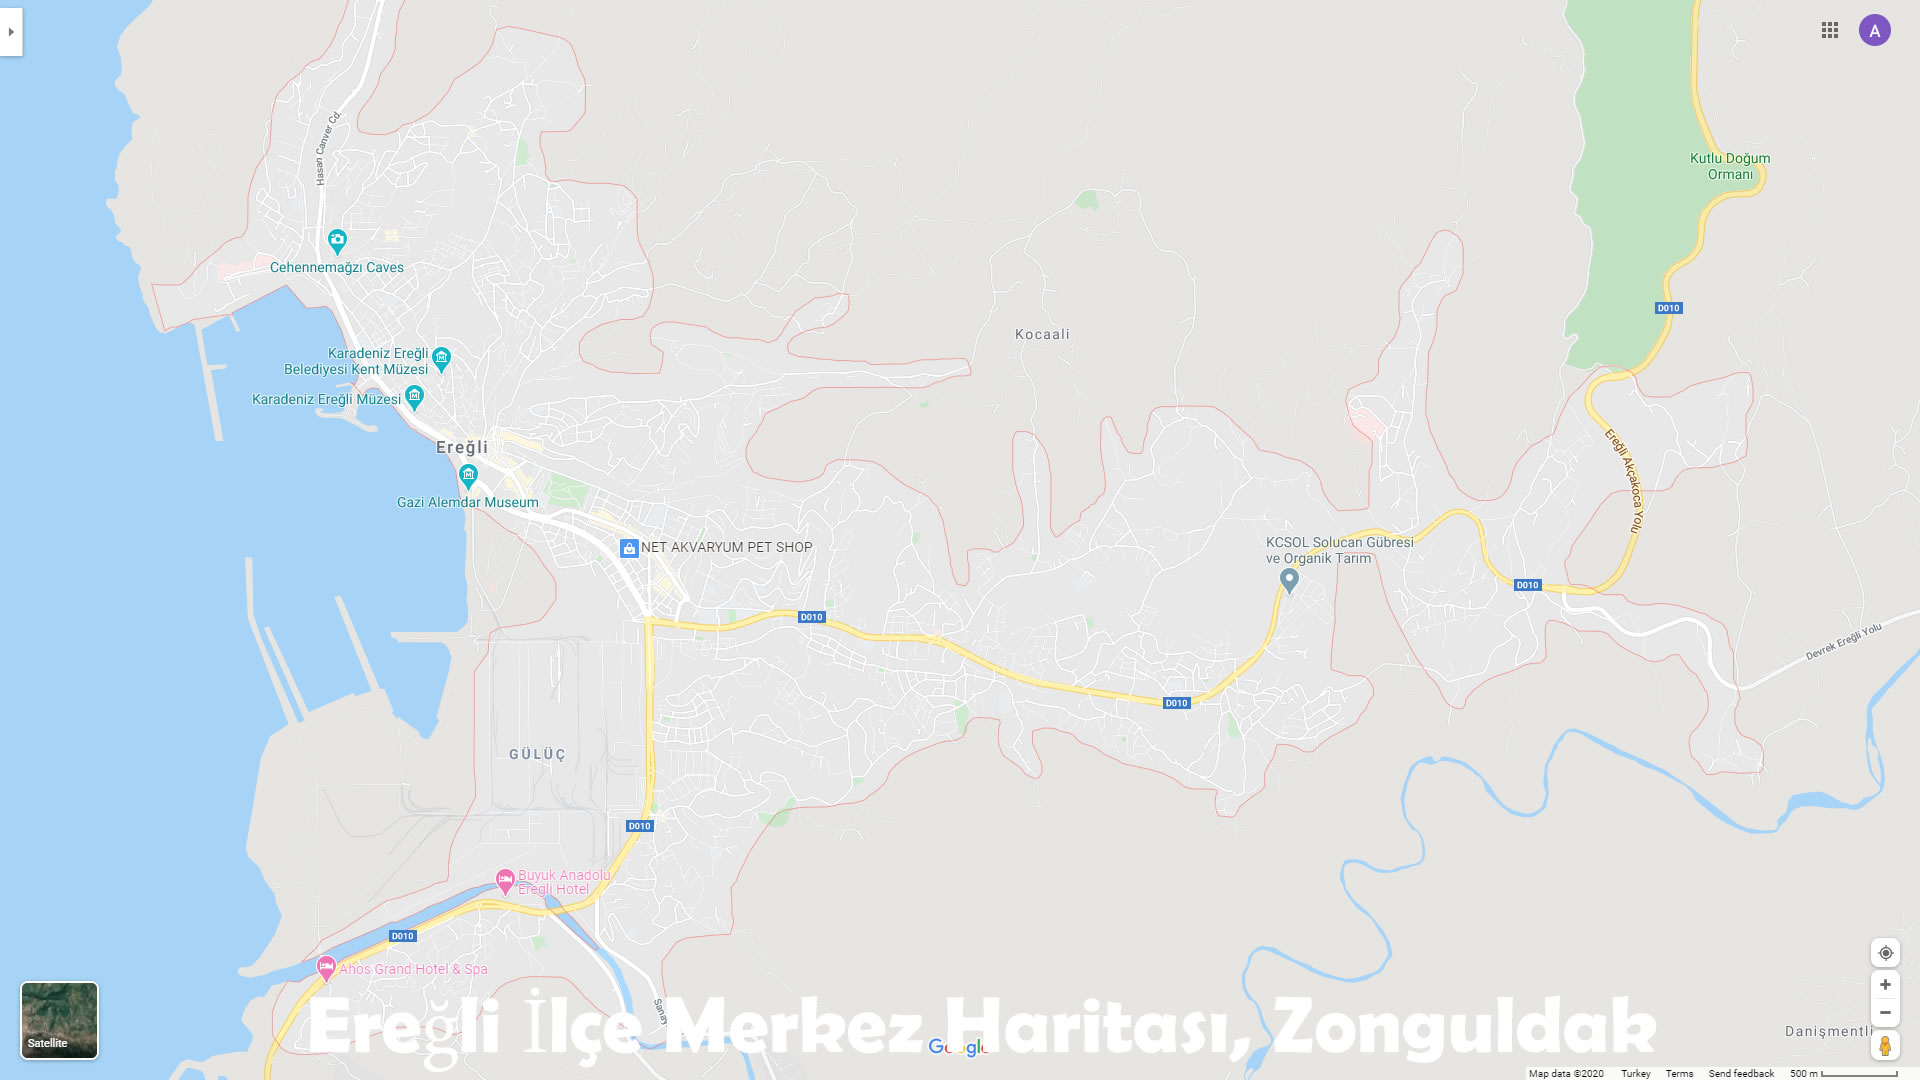 Ereğli İlçe Merkez Haritası, Zonguldak